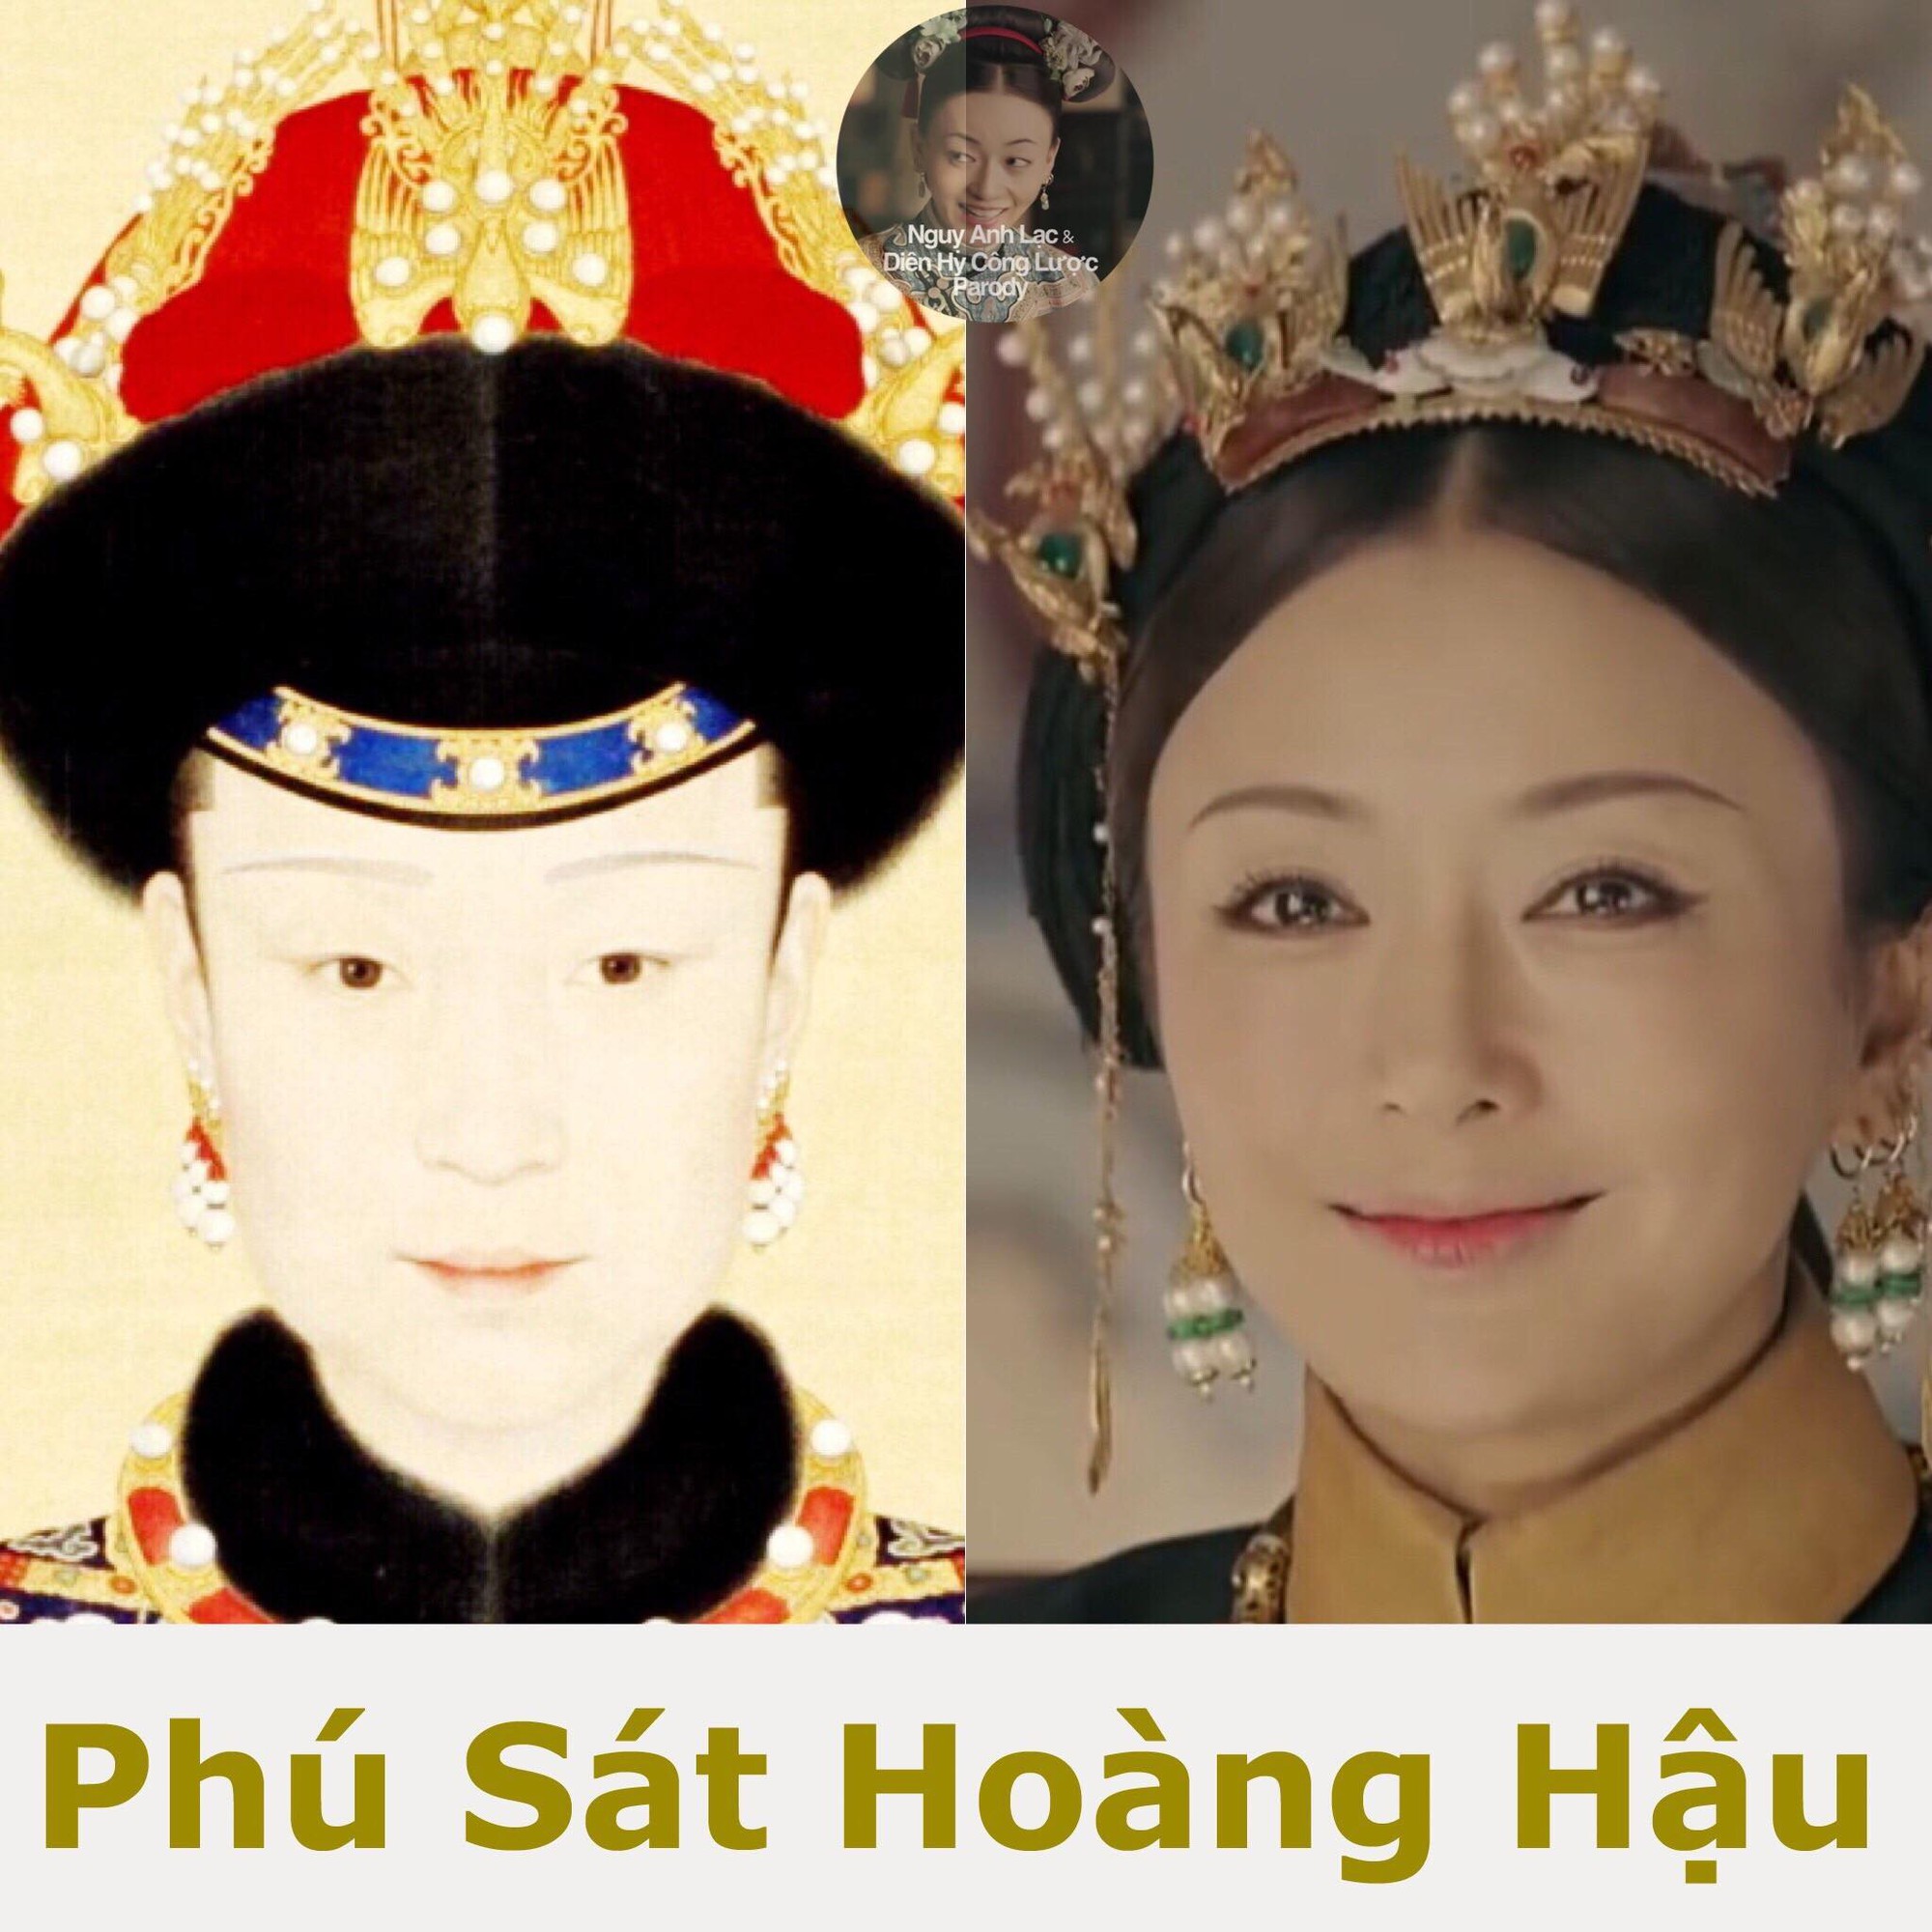 Chân dung thật của vua Càn Long, Phú Sát Hằng, Hoằng Trú và cung tần mỹ nữ ở hậu cung - Ảnh 6.